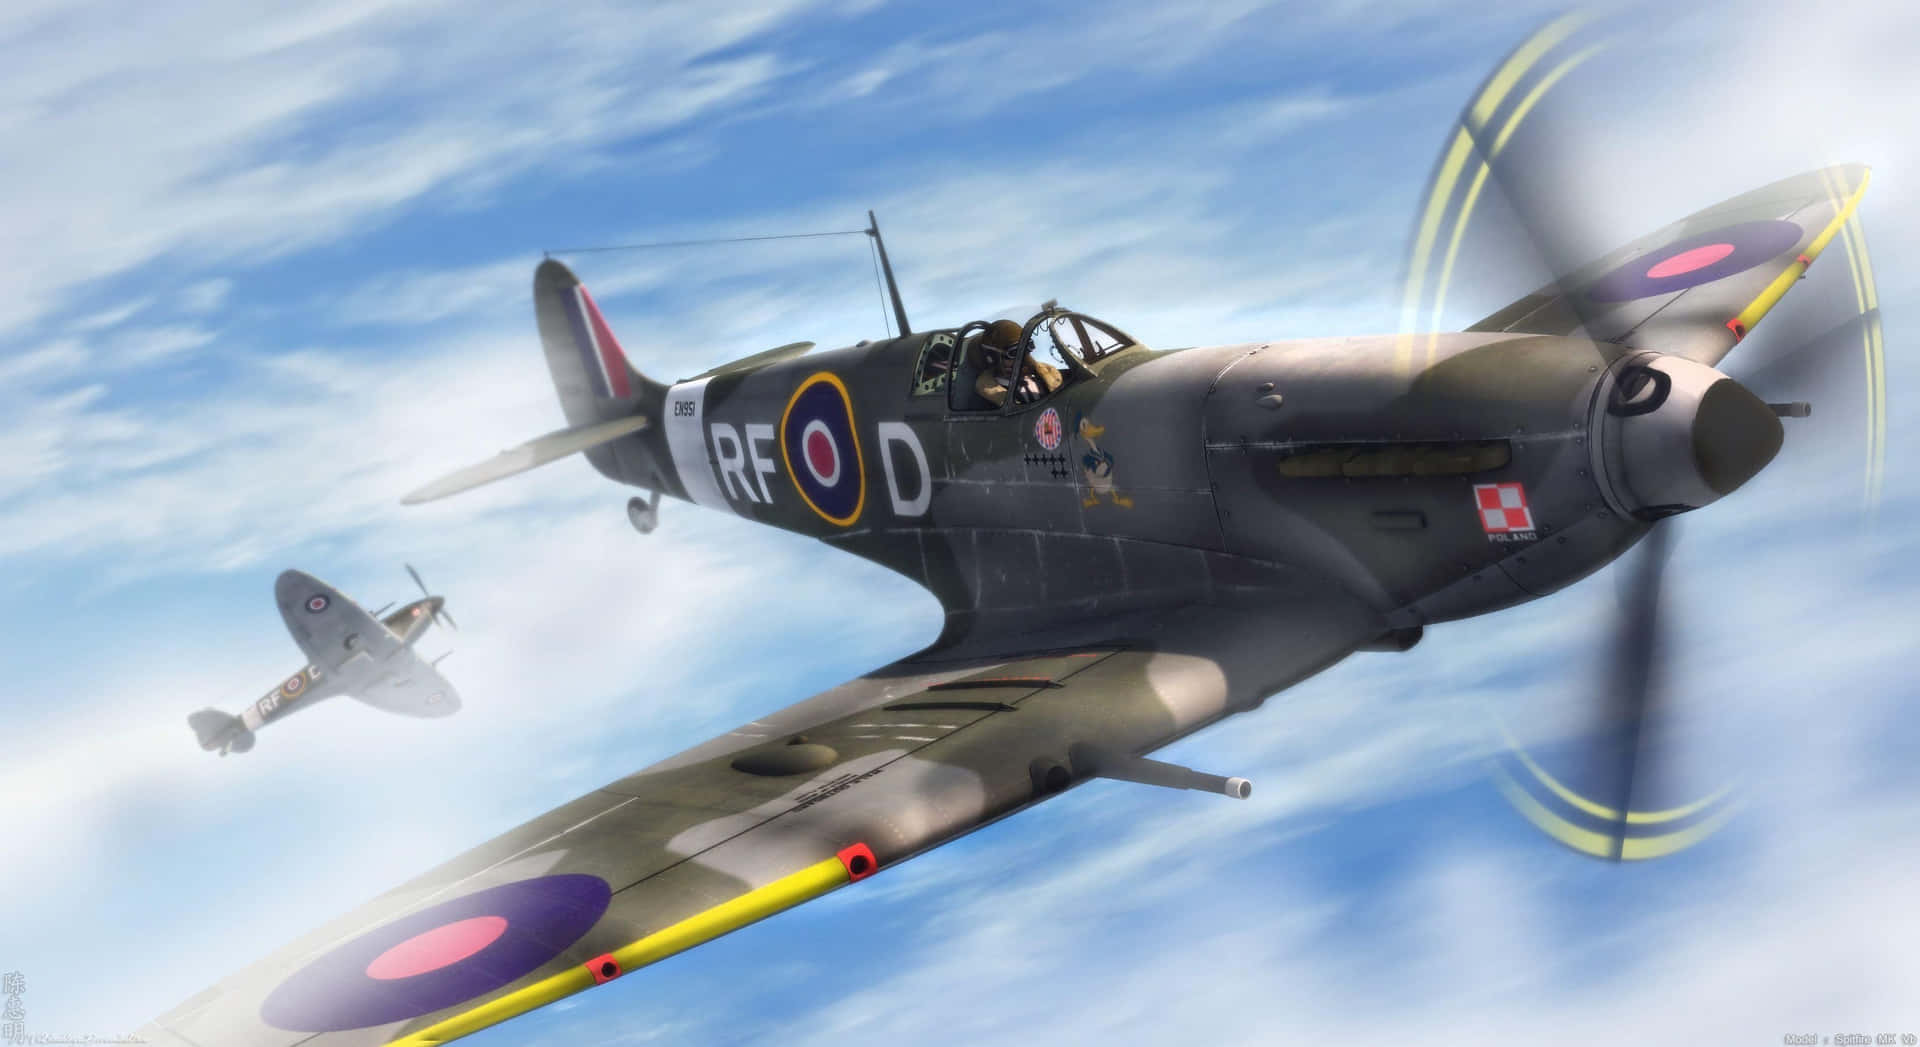 Spitfire 3300 X 1800 Wallpaper